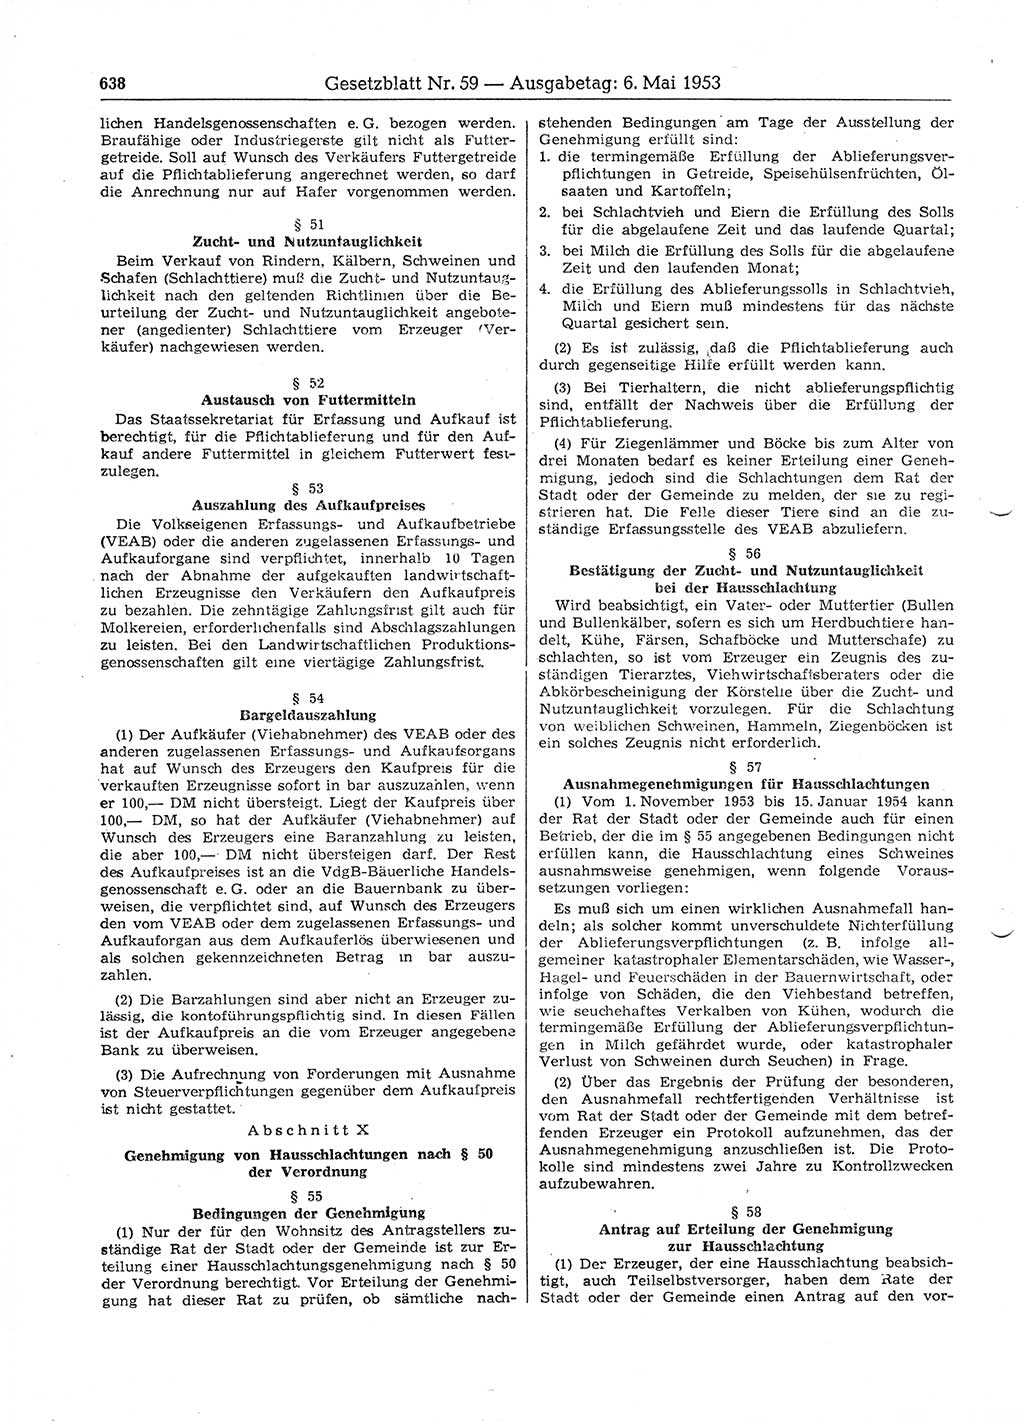 Gesetzblatt (GBl.) der Deutschen Demokratischen Republik (DDR) 1953, Seite 638 (GBl. DDR 1953, S. 638)